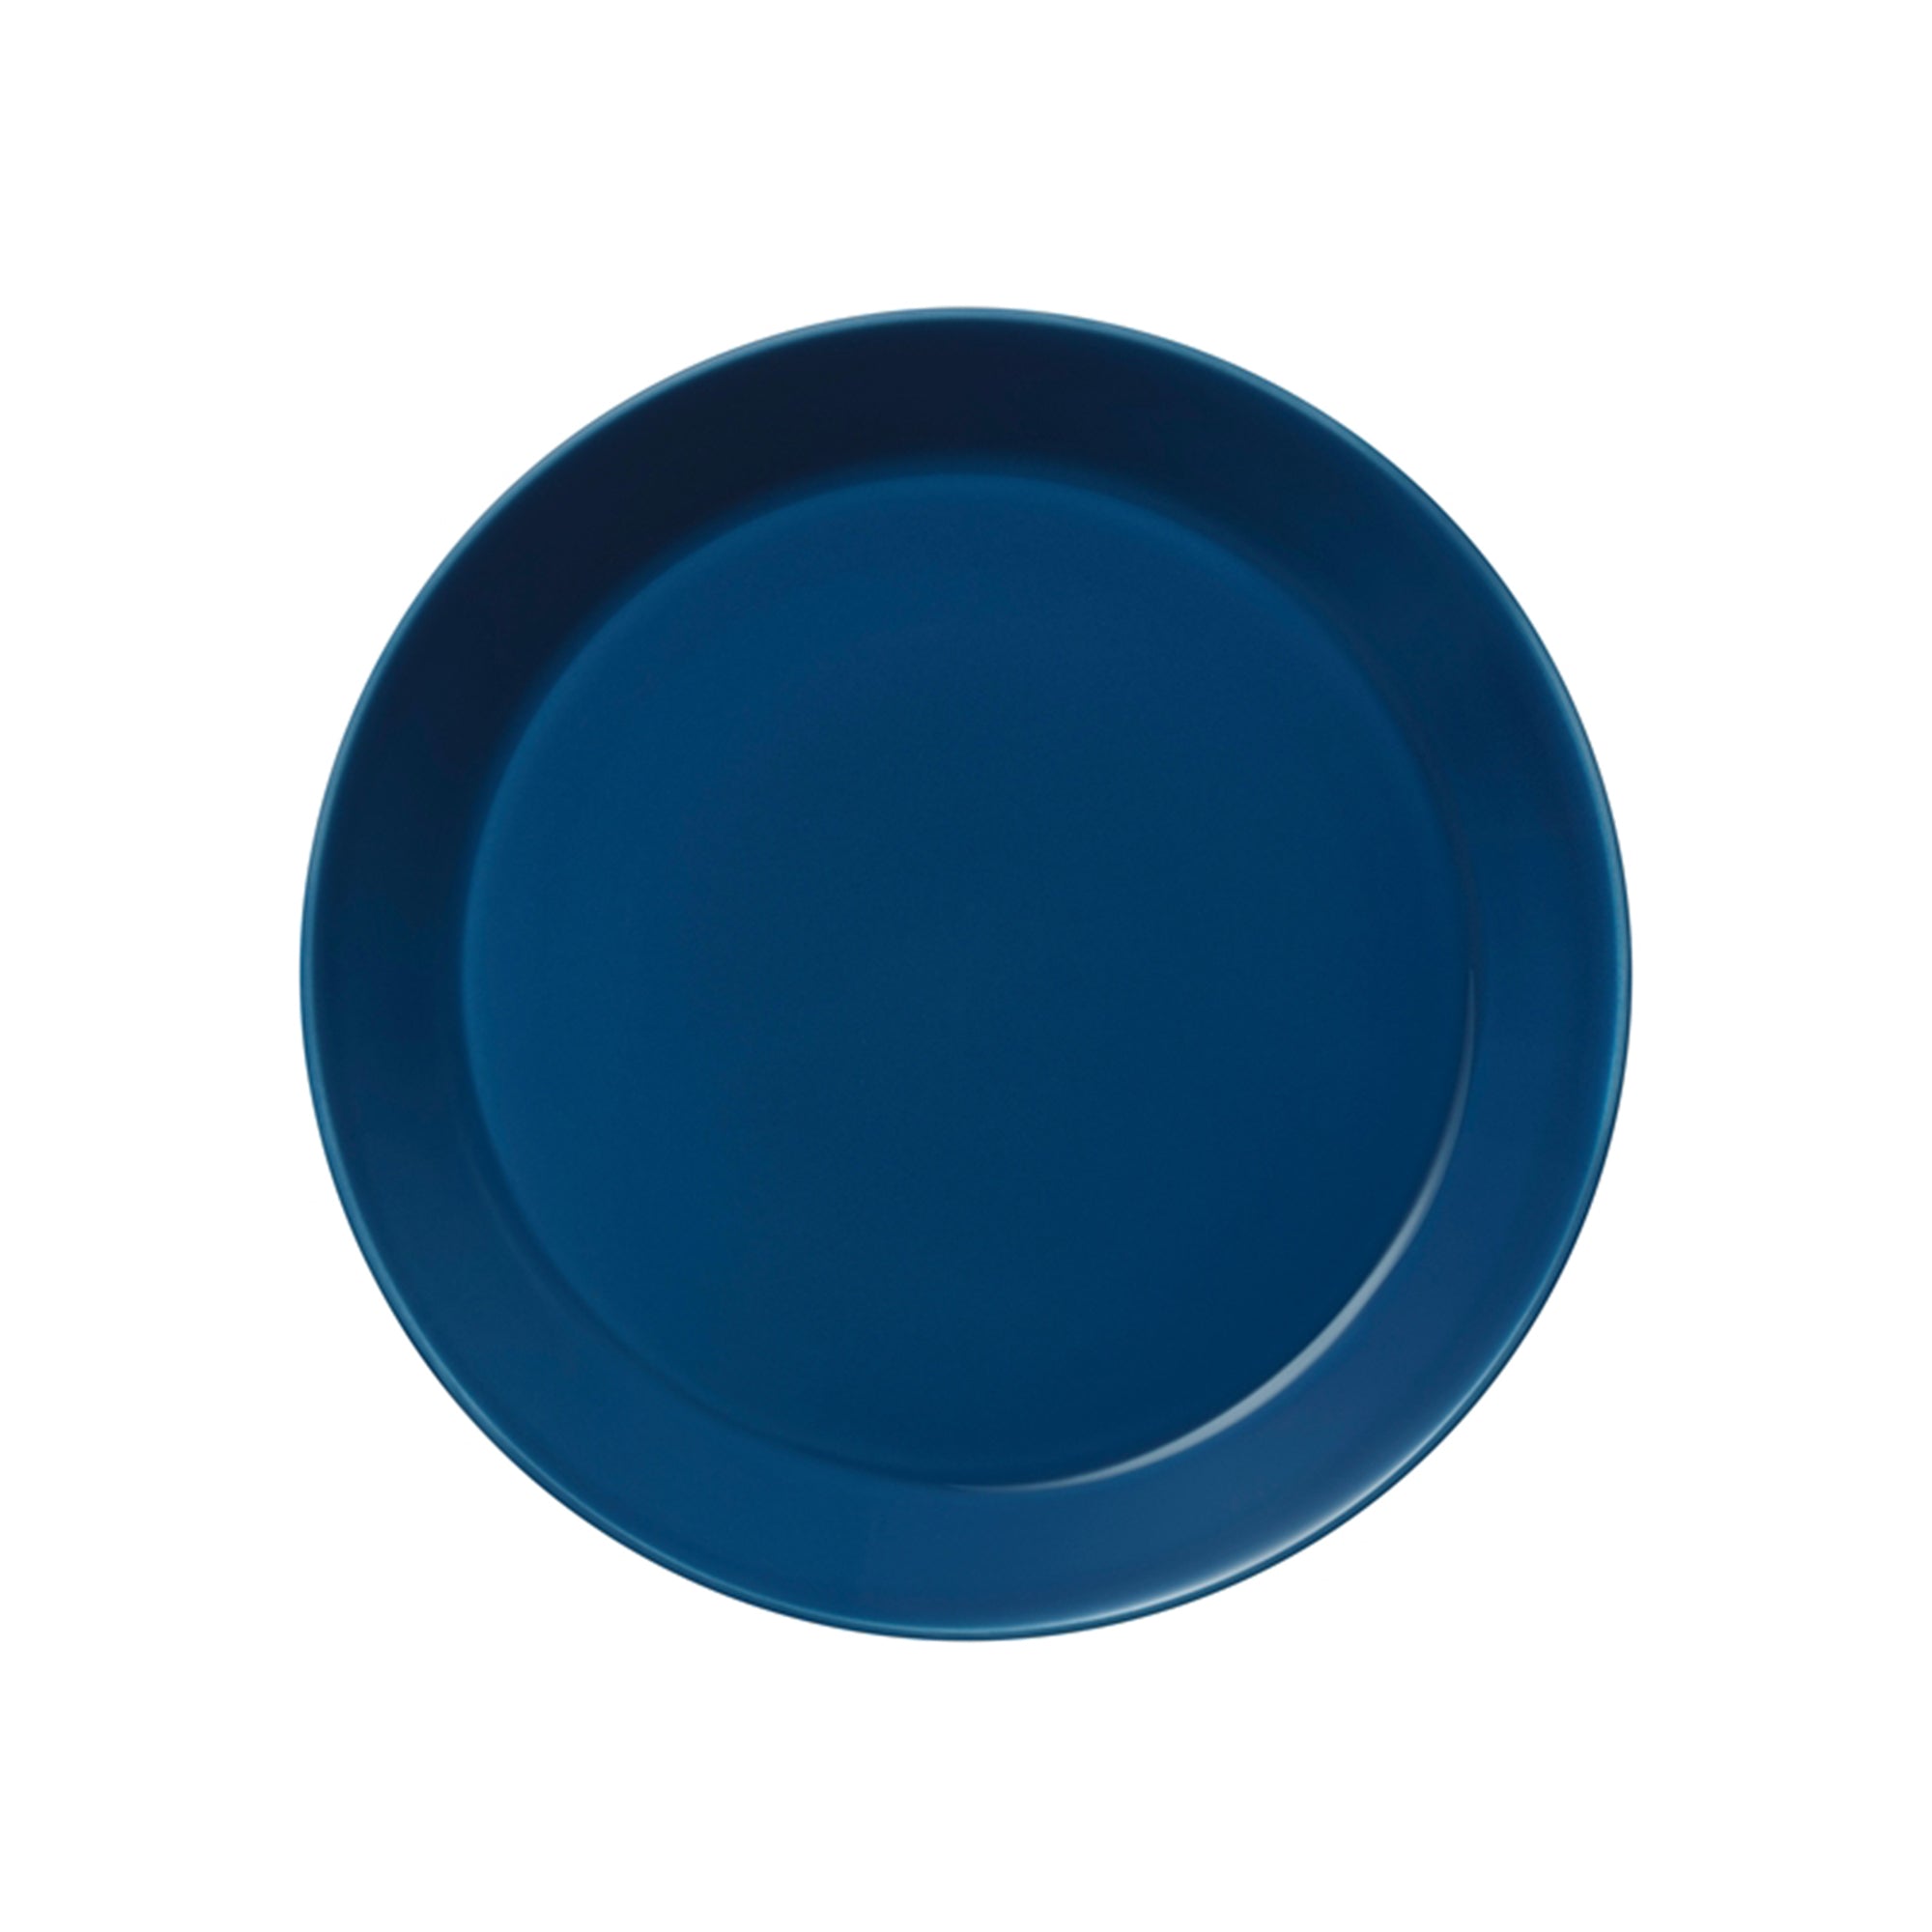 Teema Vintage Blue Dinner Plate, 10.25"